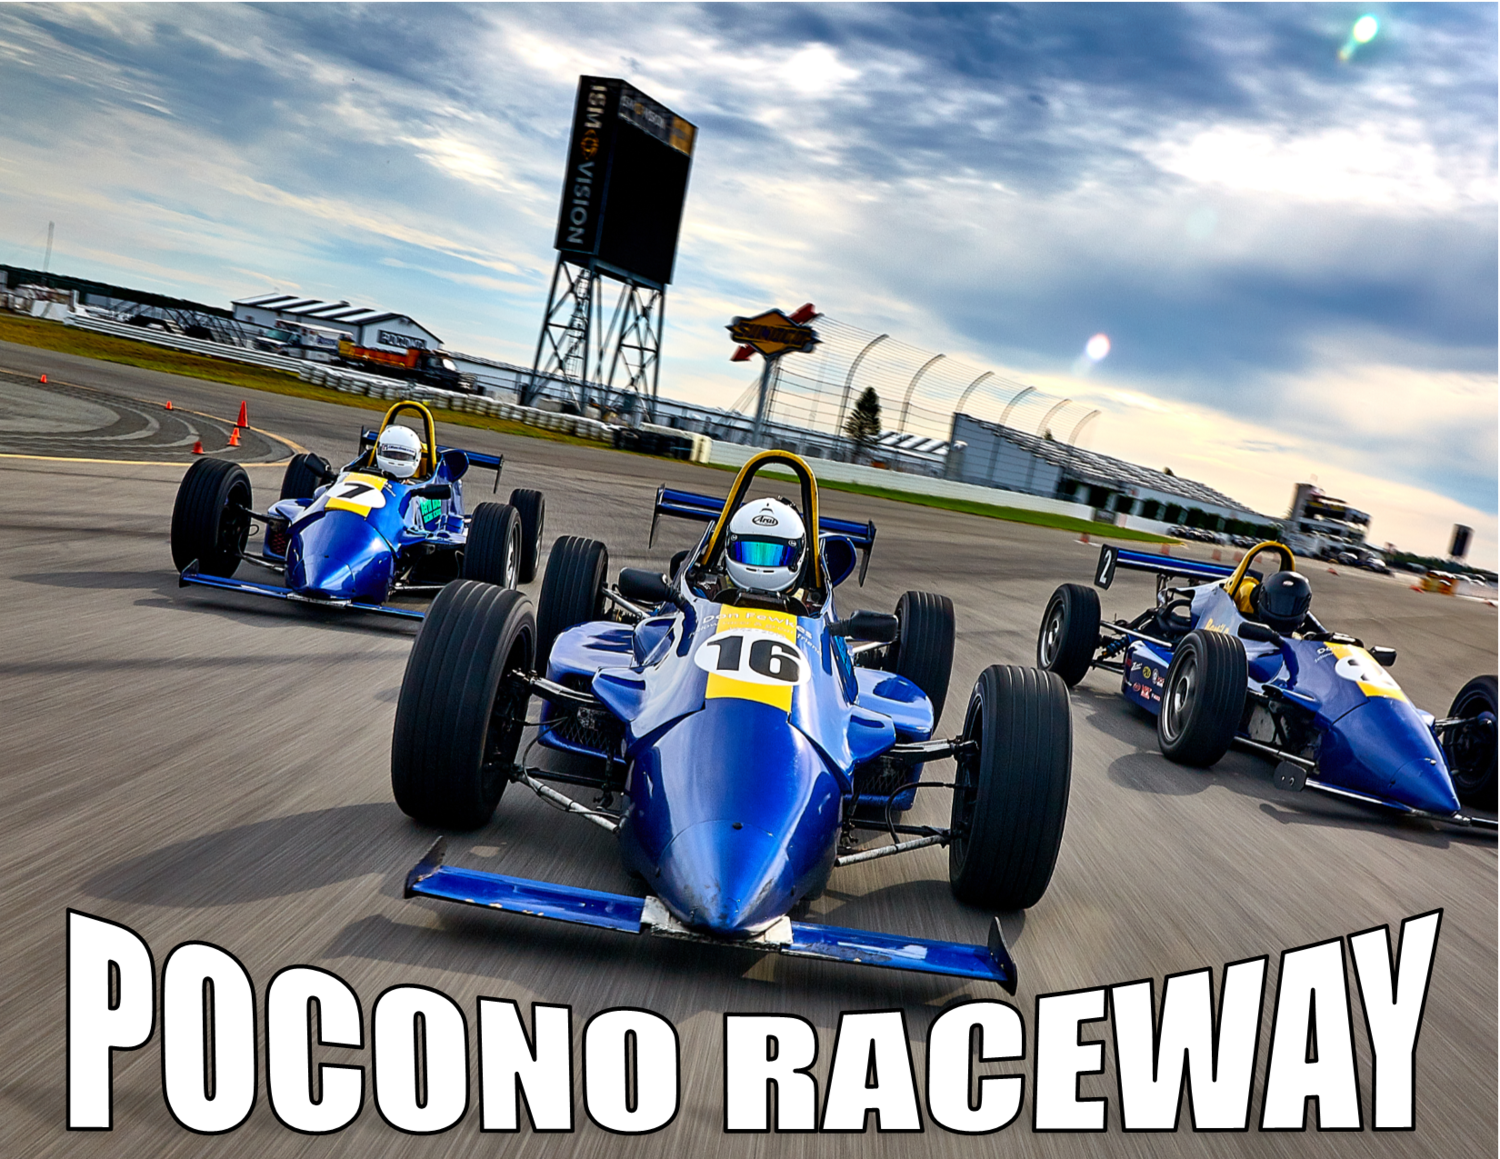 Pocono Raceway - 1 Day Road Racing School